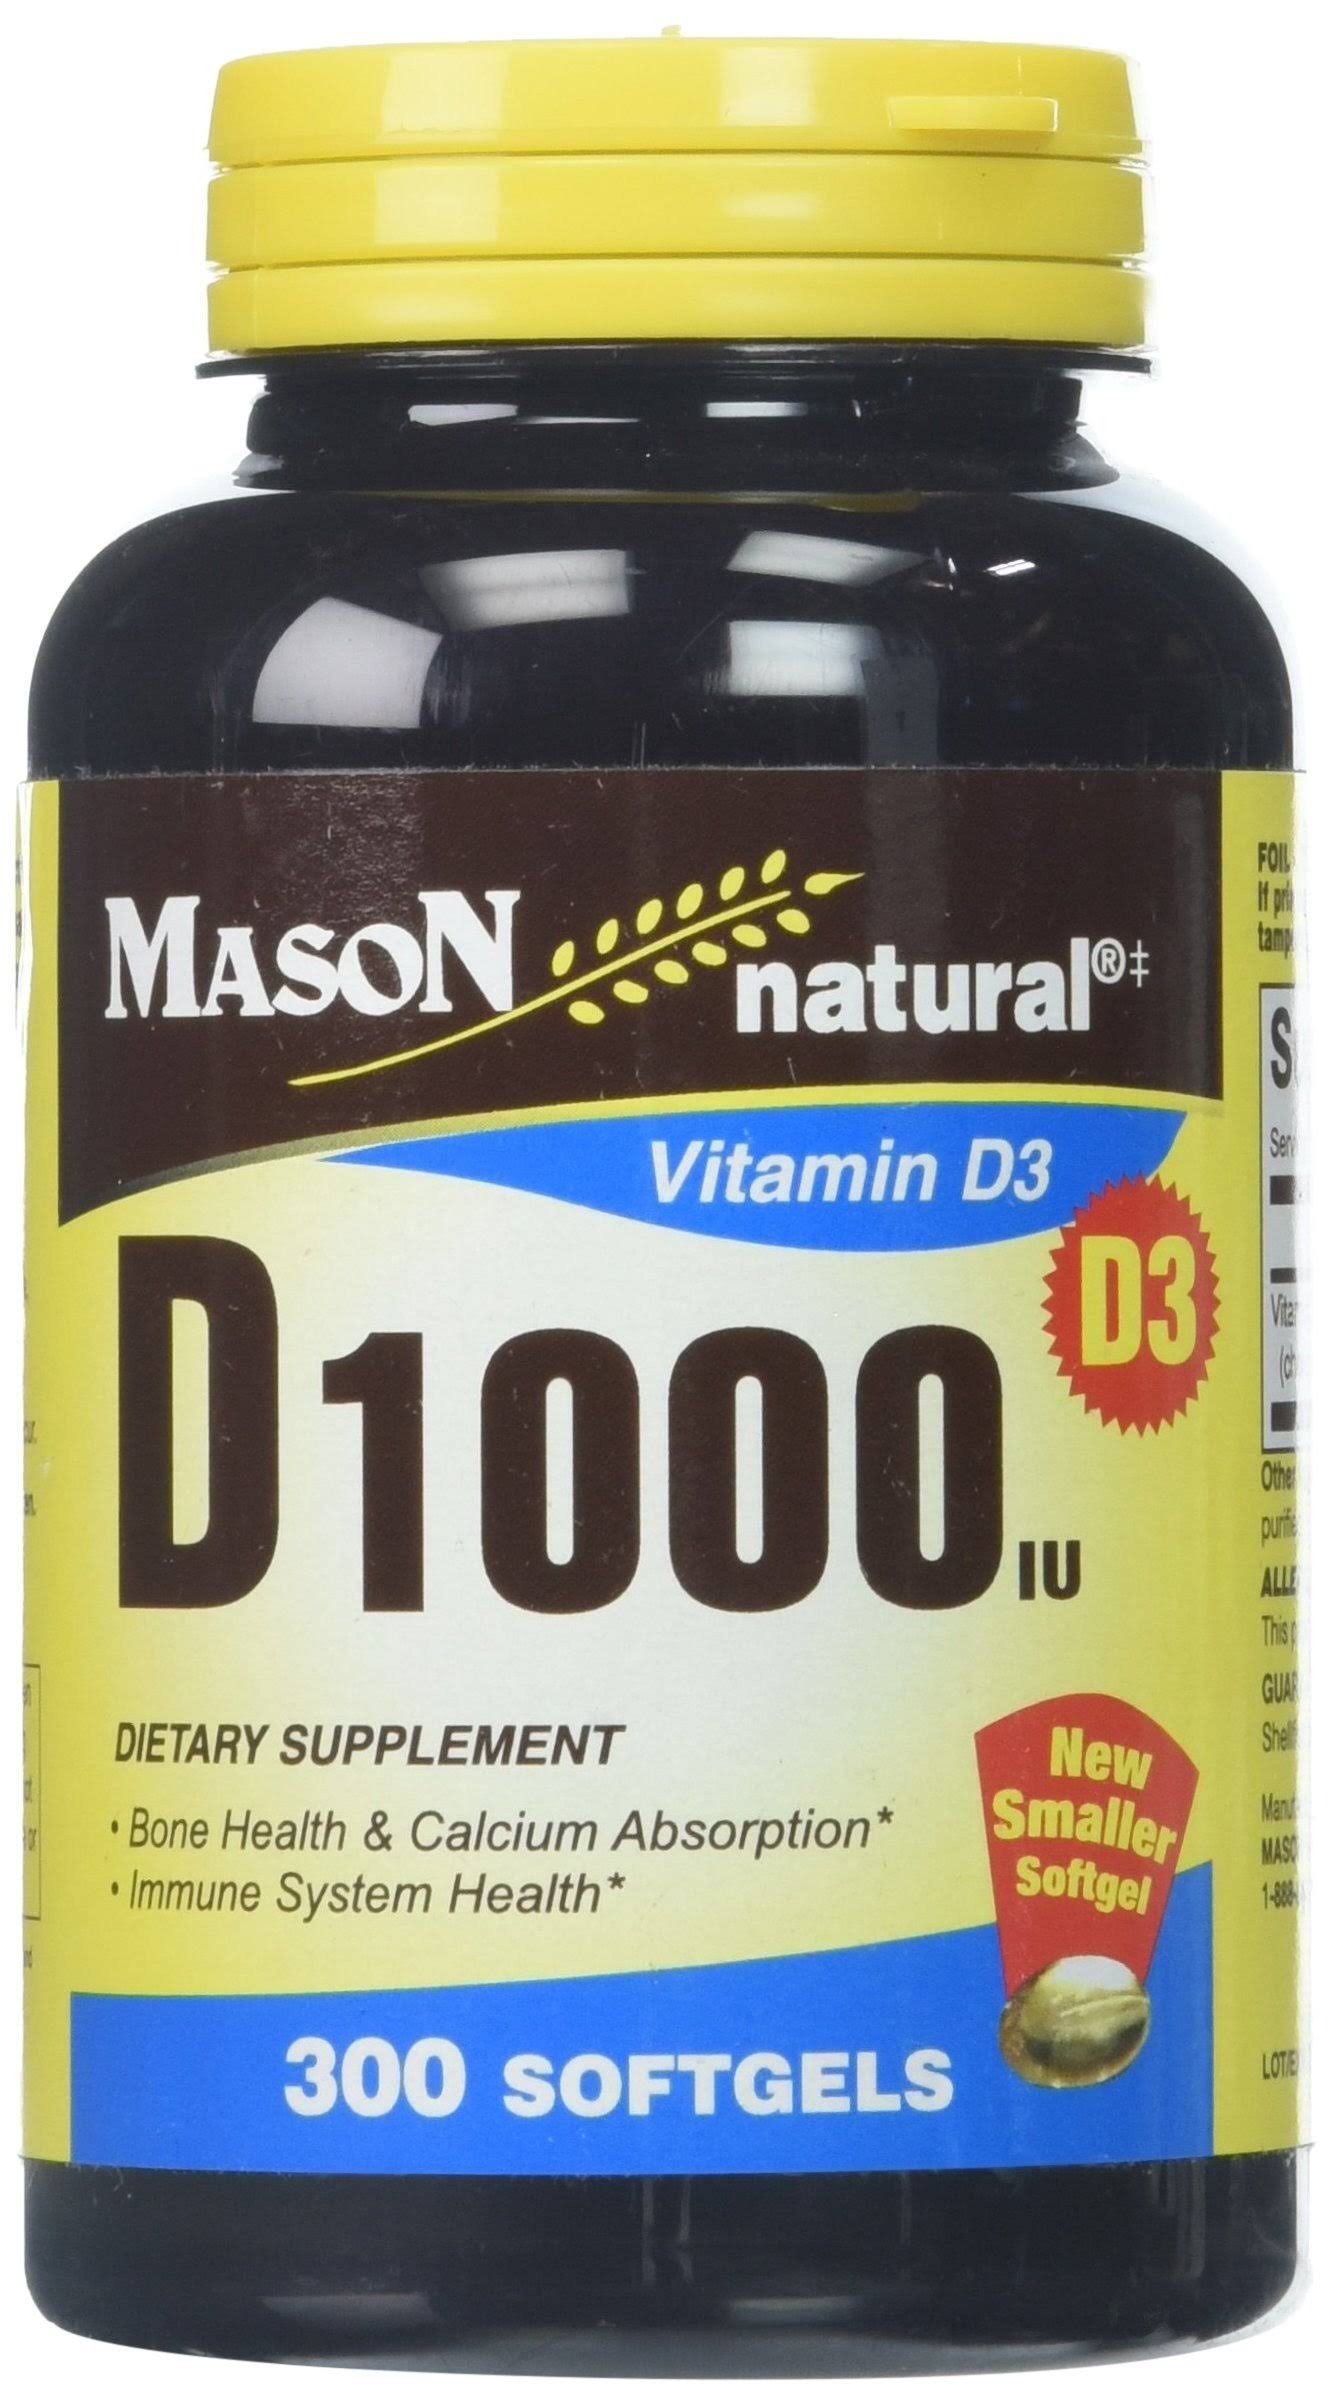 Mason Natural Vitamin D3 Supplement - 1000 IU, 300 Softgels